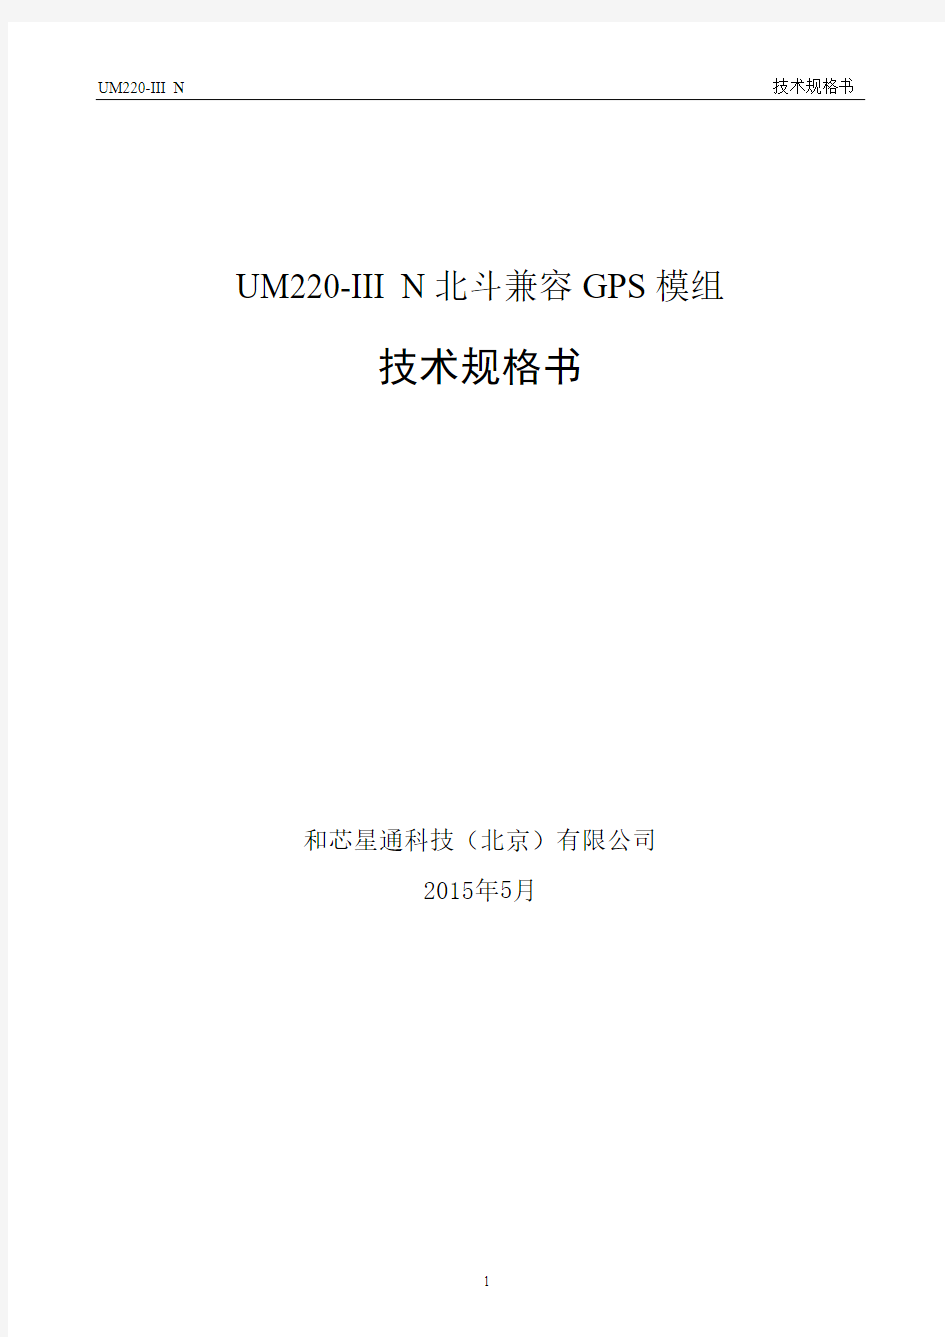 UM220-III技术规格书